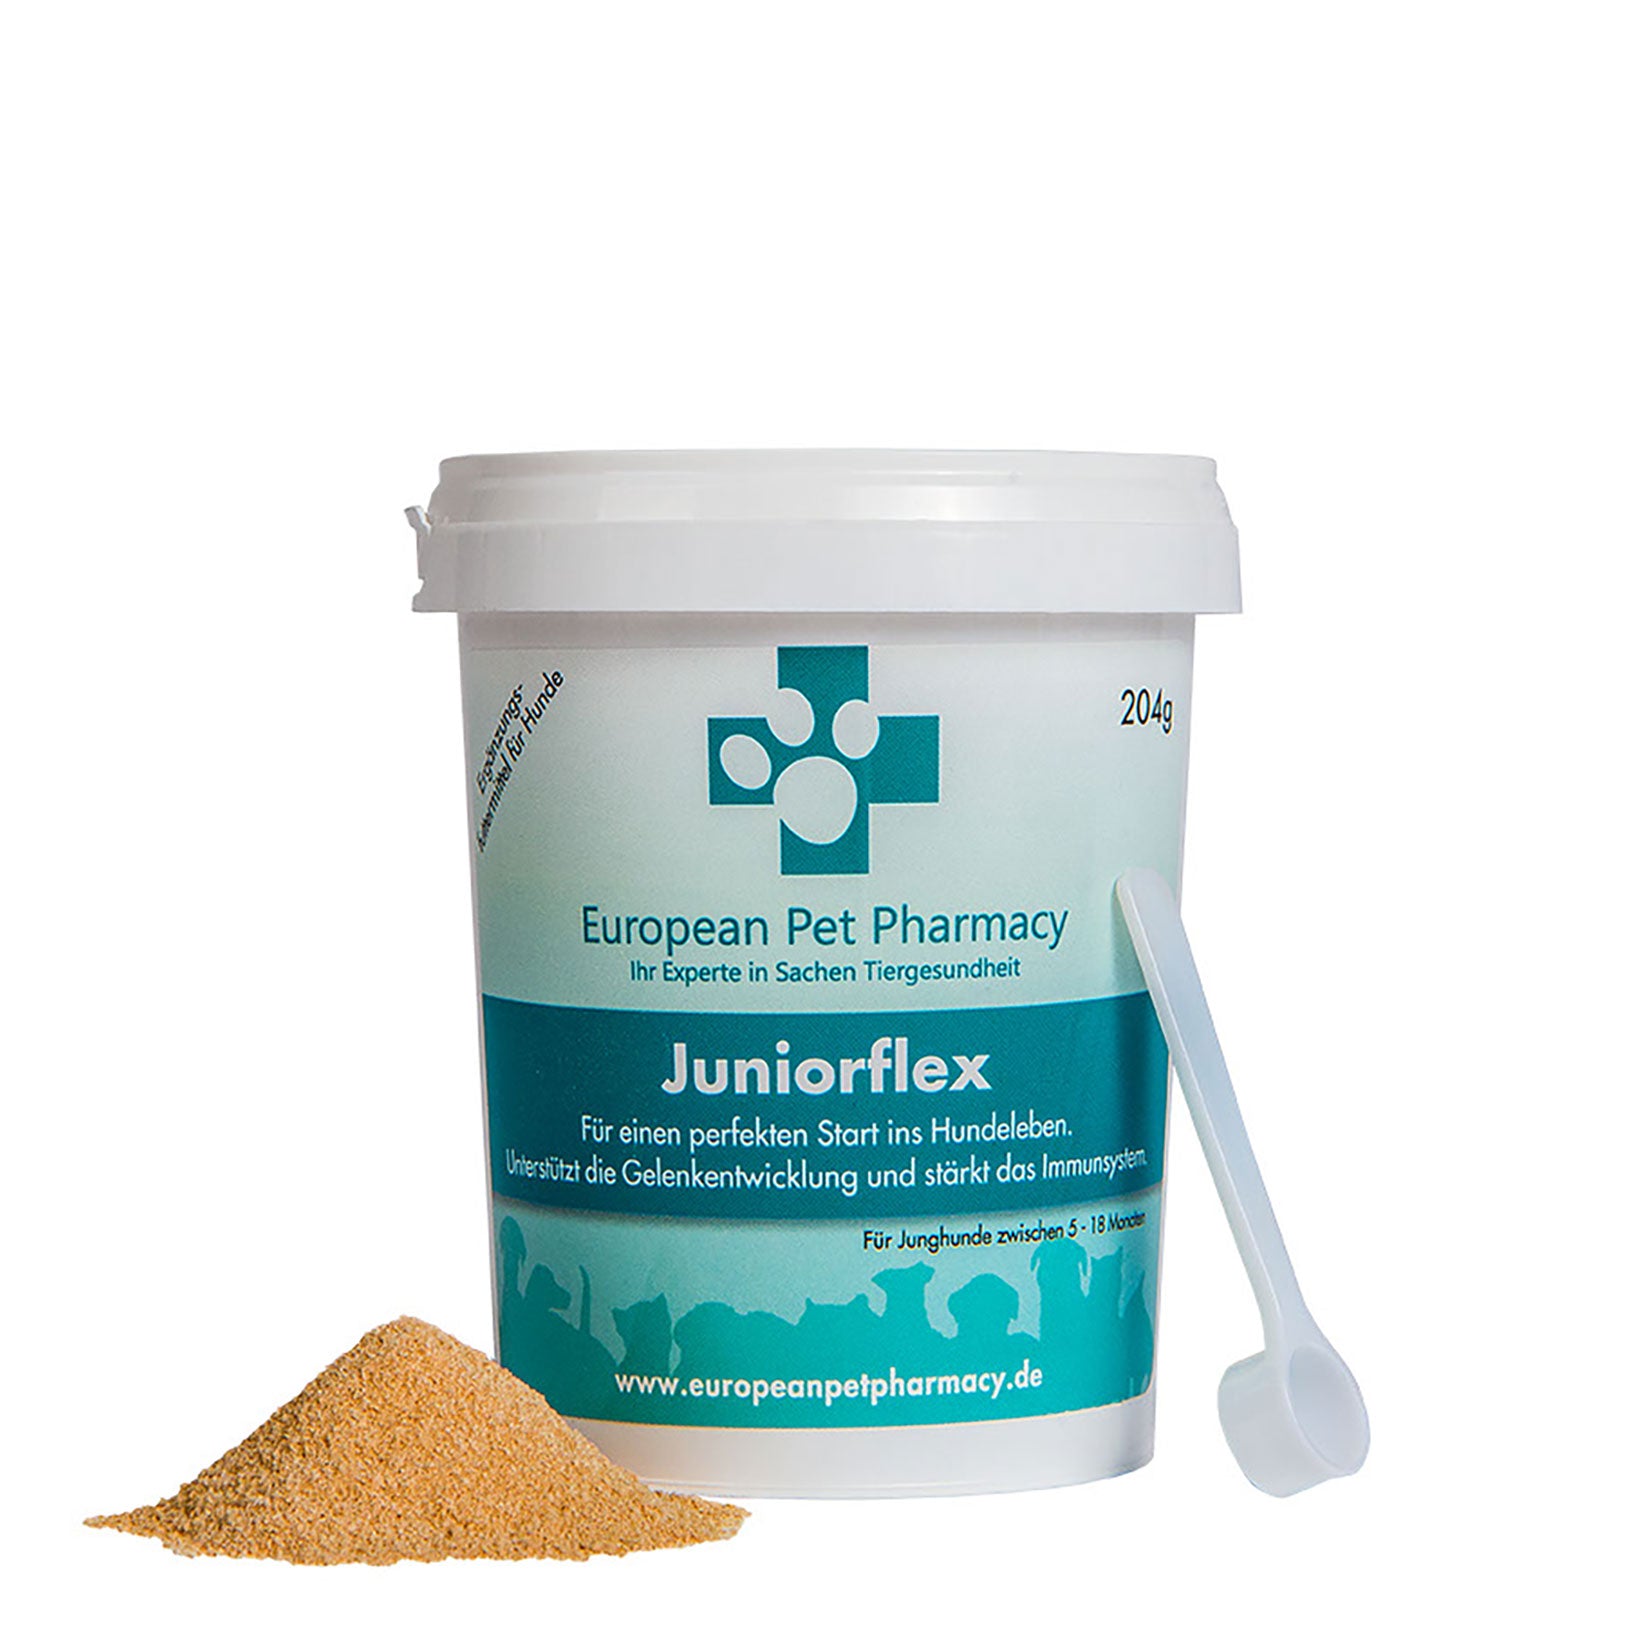 Juniorflex - Unterstützt die Gelenkentwicklung und stärkt das Immunsystem von Junghunden